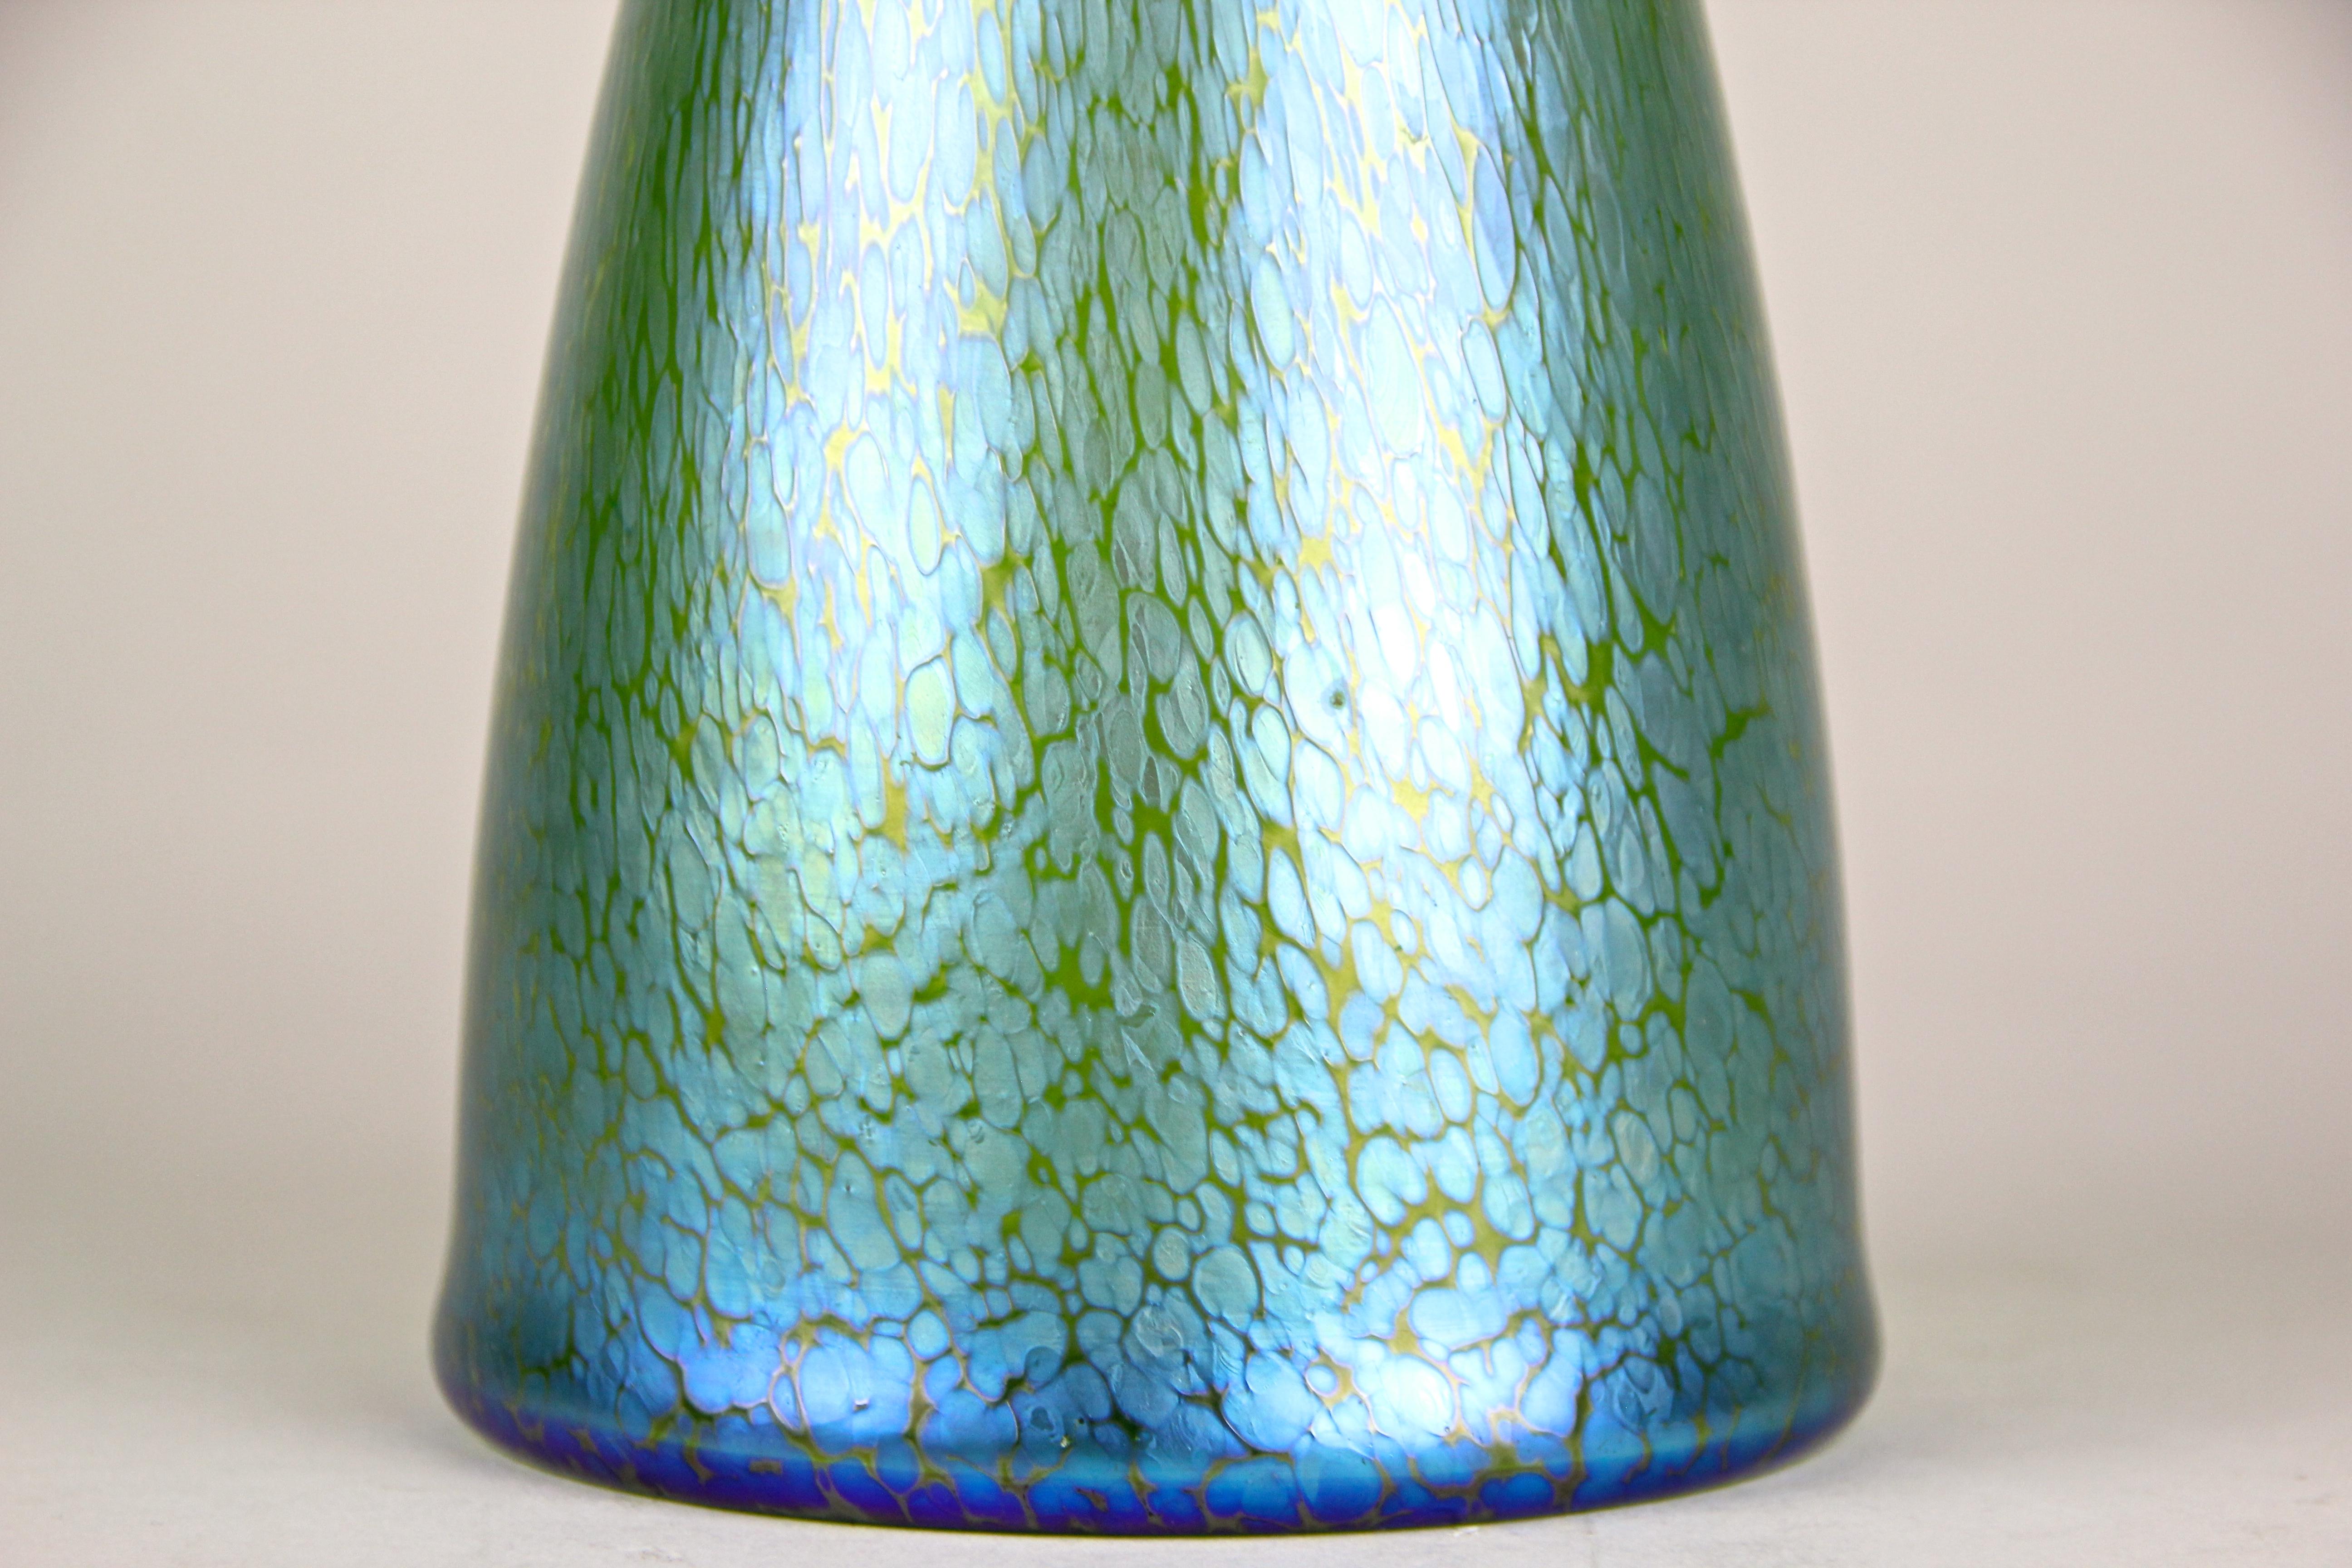 Superbe vase en verre Loetz par Koloman Moser pour E. Bakalowits, fabriqué à Klostermuehle/ Bohème, vers 1899. Ce rare vase en verre de Bohème a été conçu par nul autre que l'artisan autrichien de renommée mondiale Koloman Moser, spécialement pour